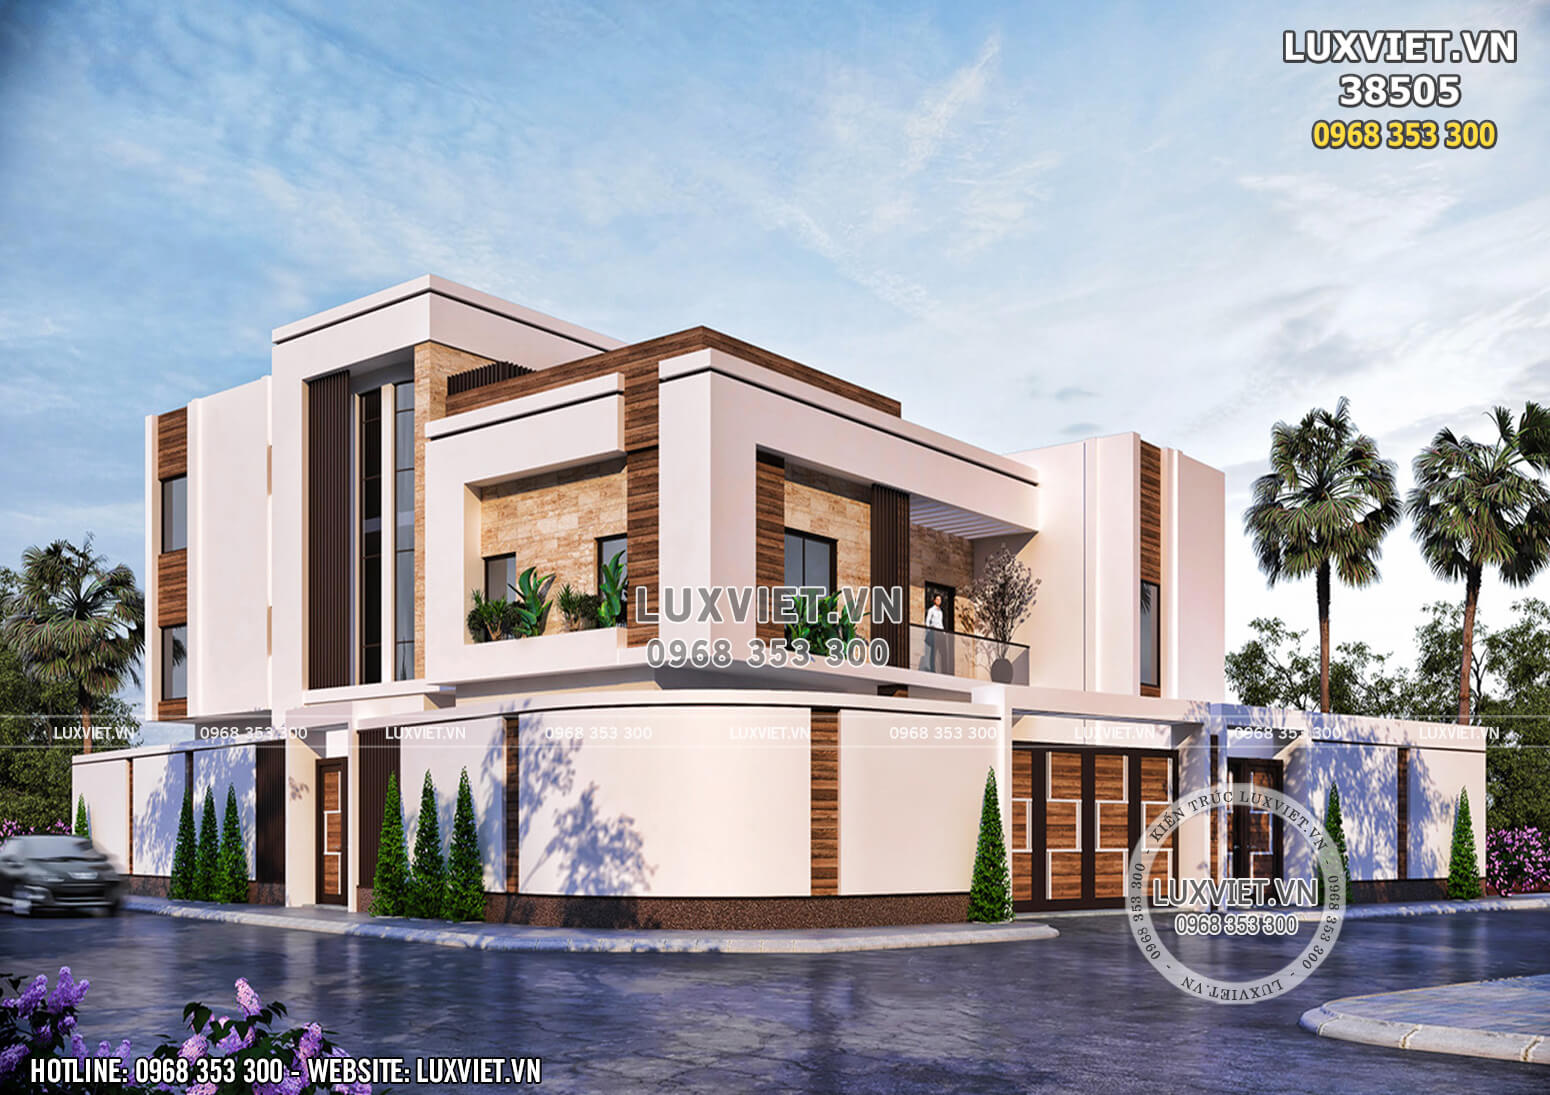 Mẫu thiết kế biệt thự villa 3 tầng hiện đại đẹp - LV 38505